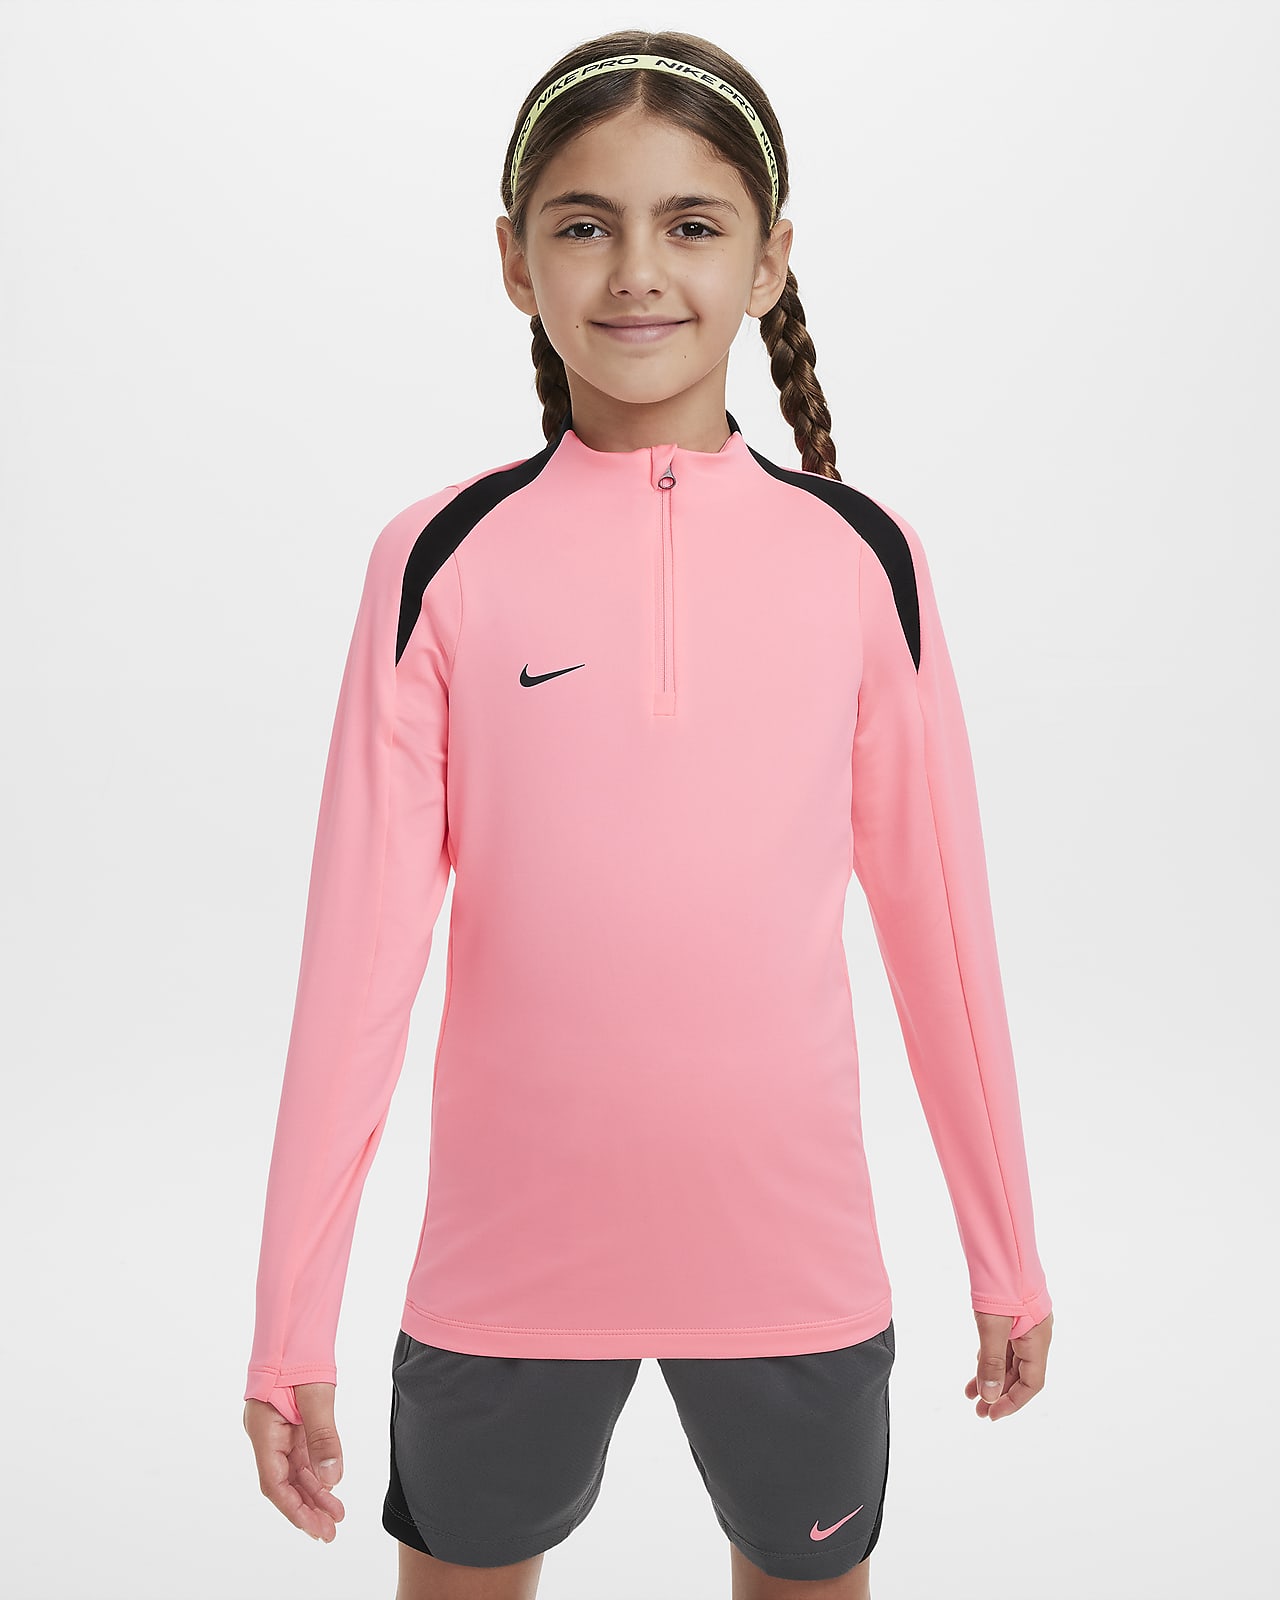 Ποδοσφαιρική μπλούζα προπόνησης Nike Dri-FIT Strike για μεγάλα παιδιά